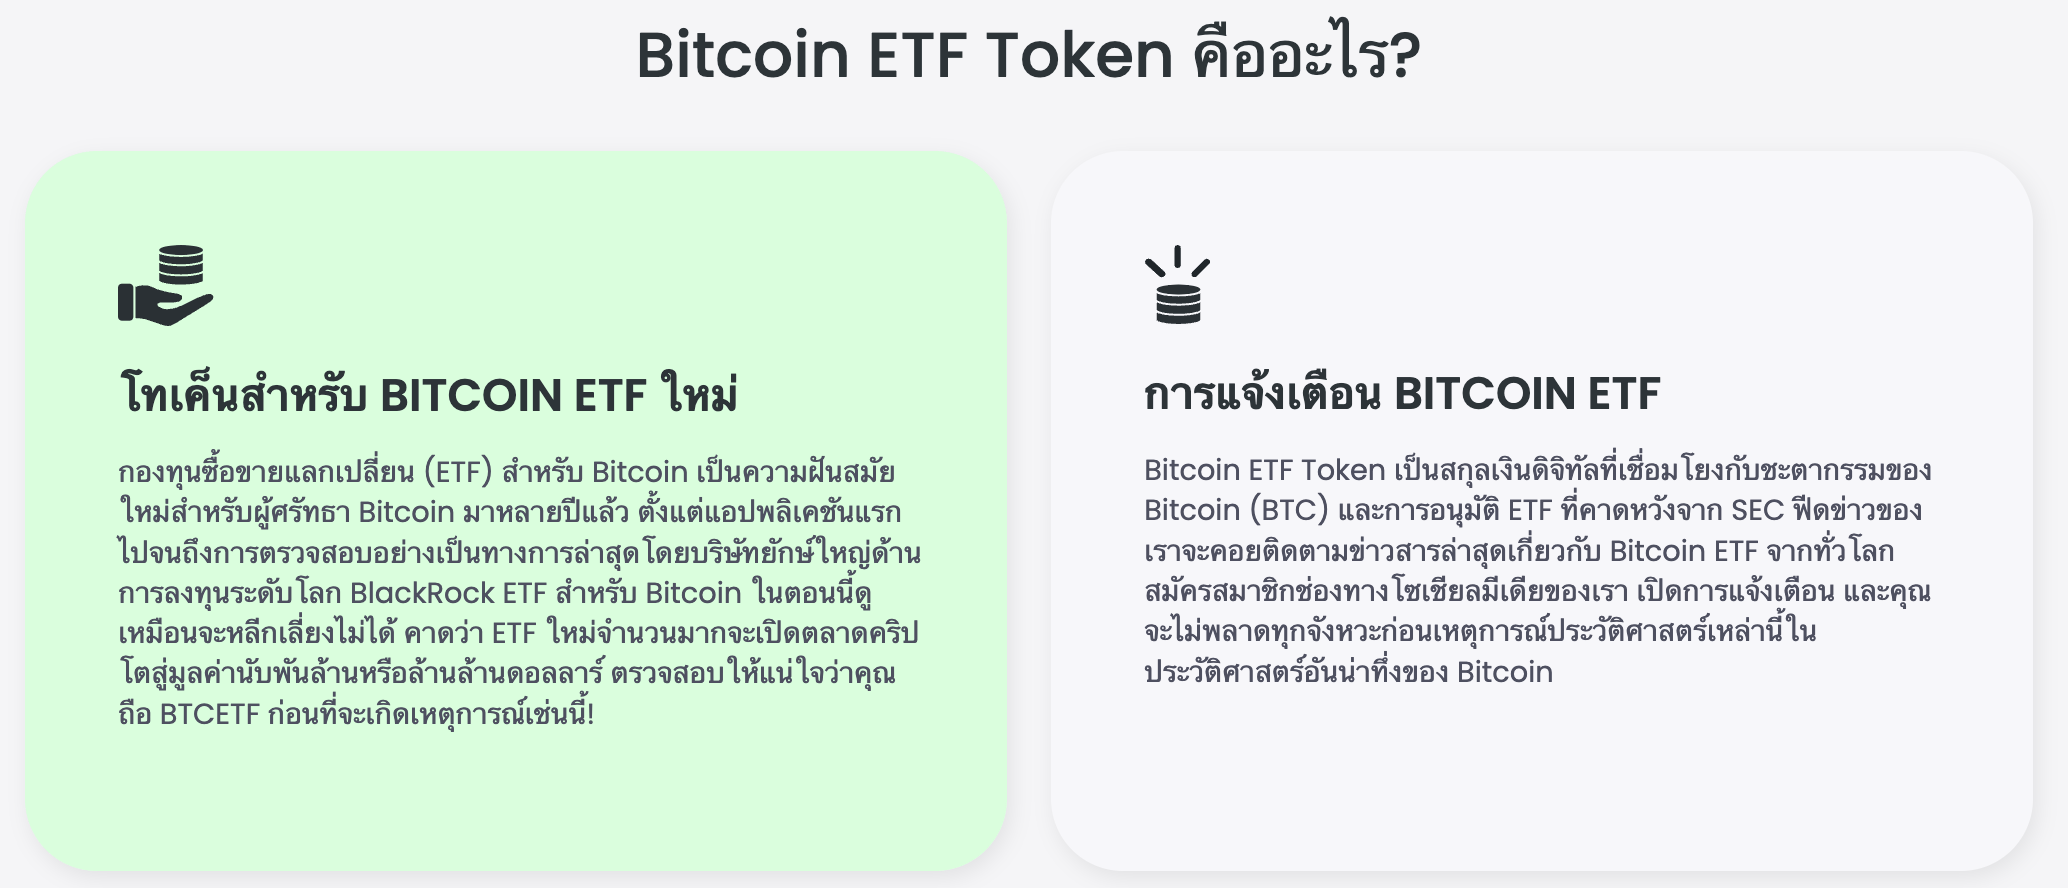 เหรียญ Bitcoin ETF คืออะไร?